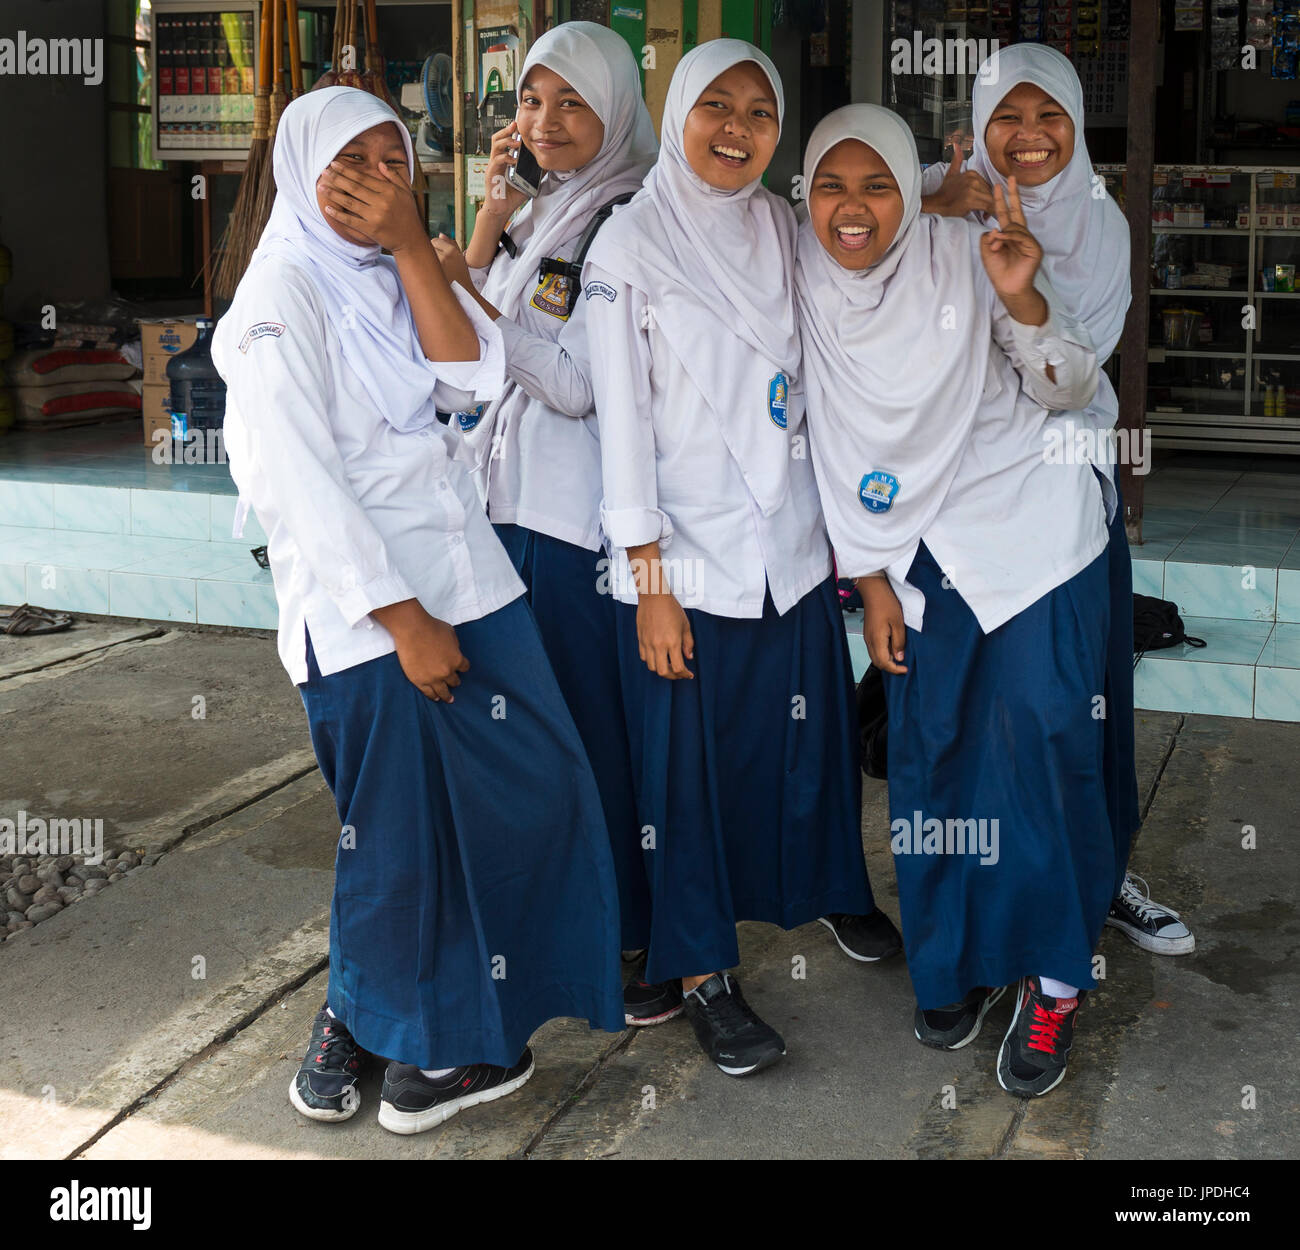 Les écolières musulmanes gaie en uniforme qui pose pour appareil photo, Yogyakarta, Java, Indonésie Banque D'Images